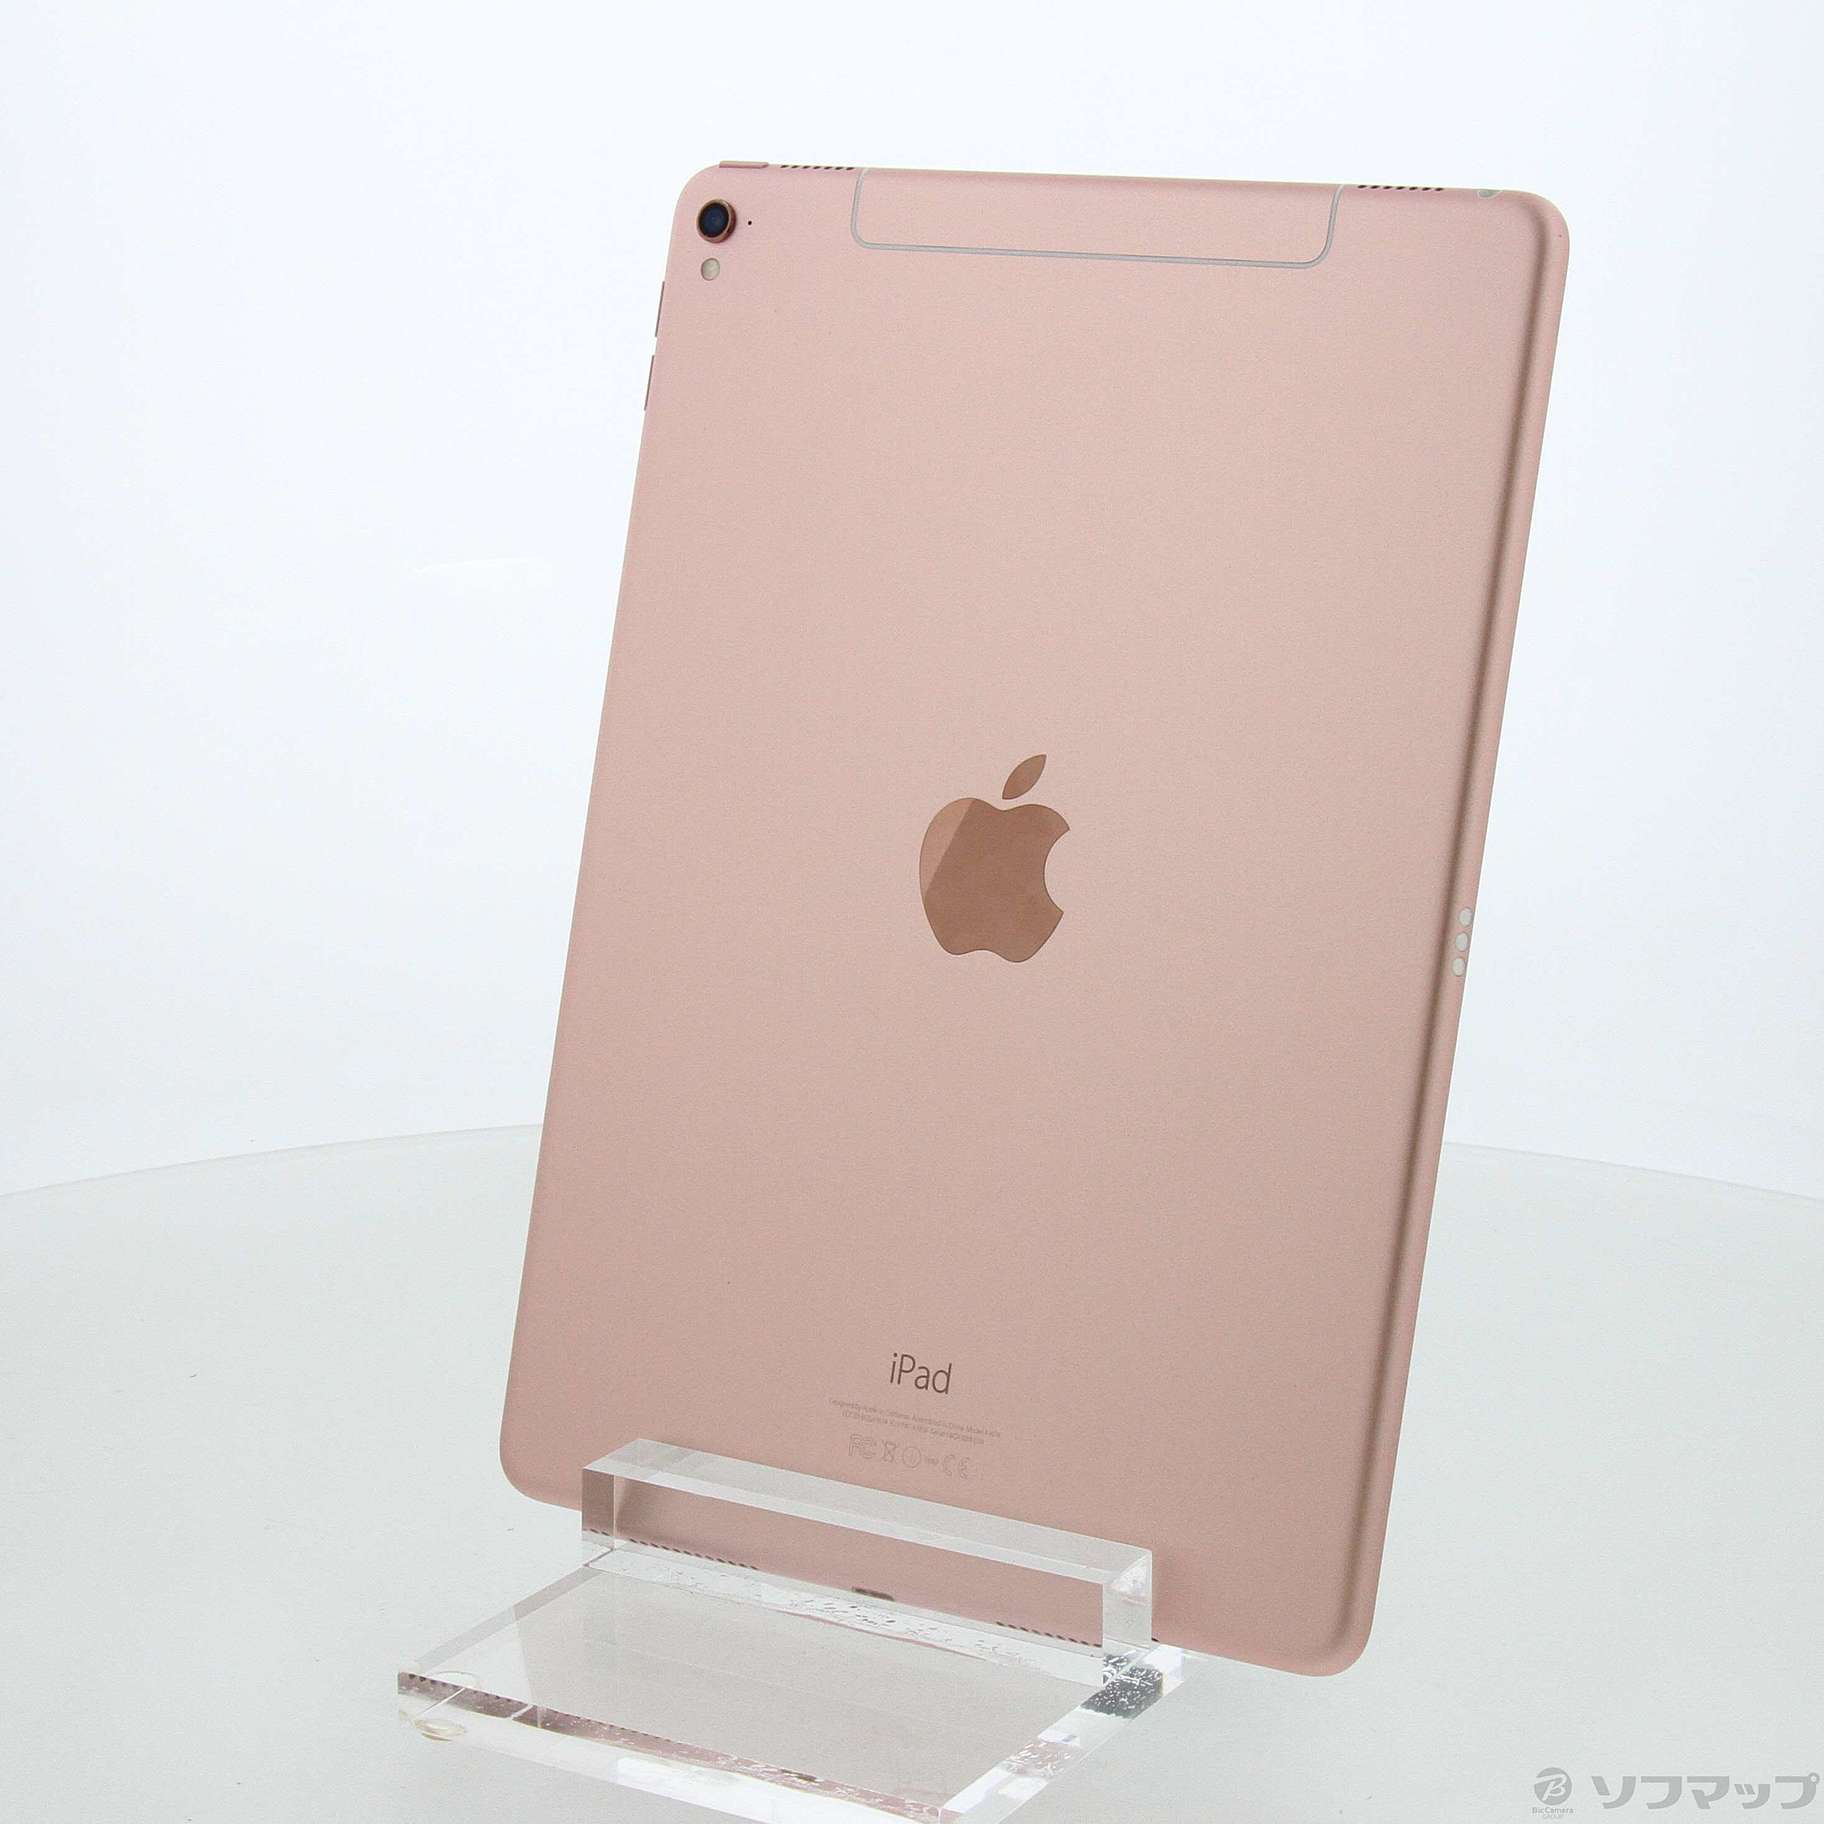 iPad Pro 9.7 256GB SIMフリー〈ローズゴールド〉